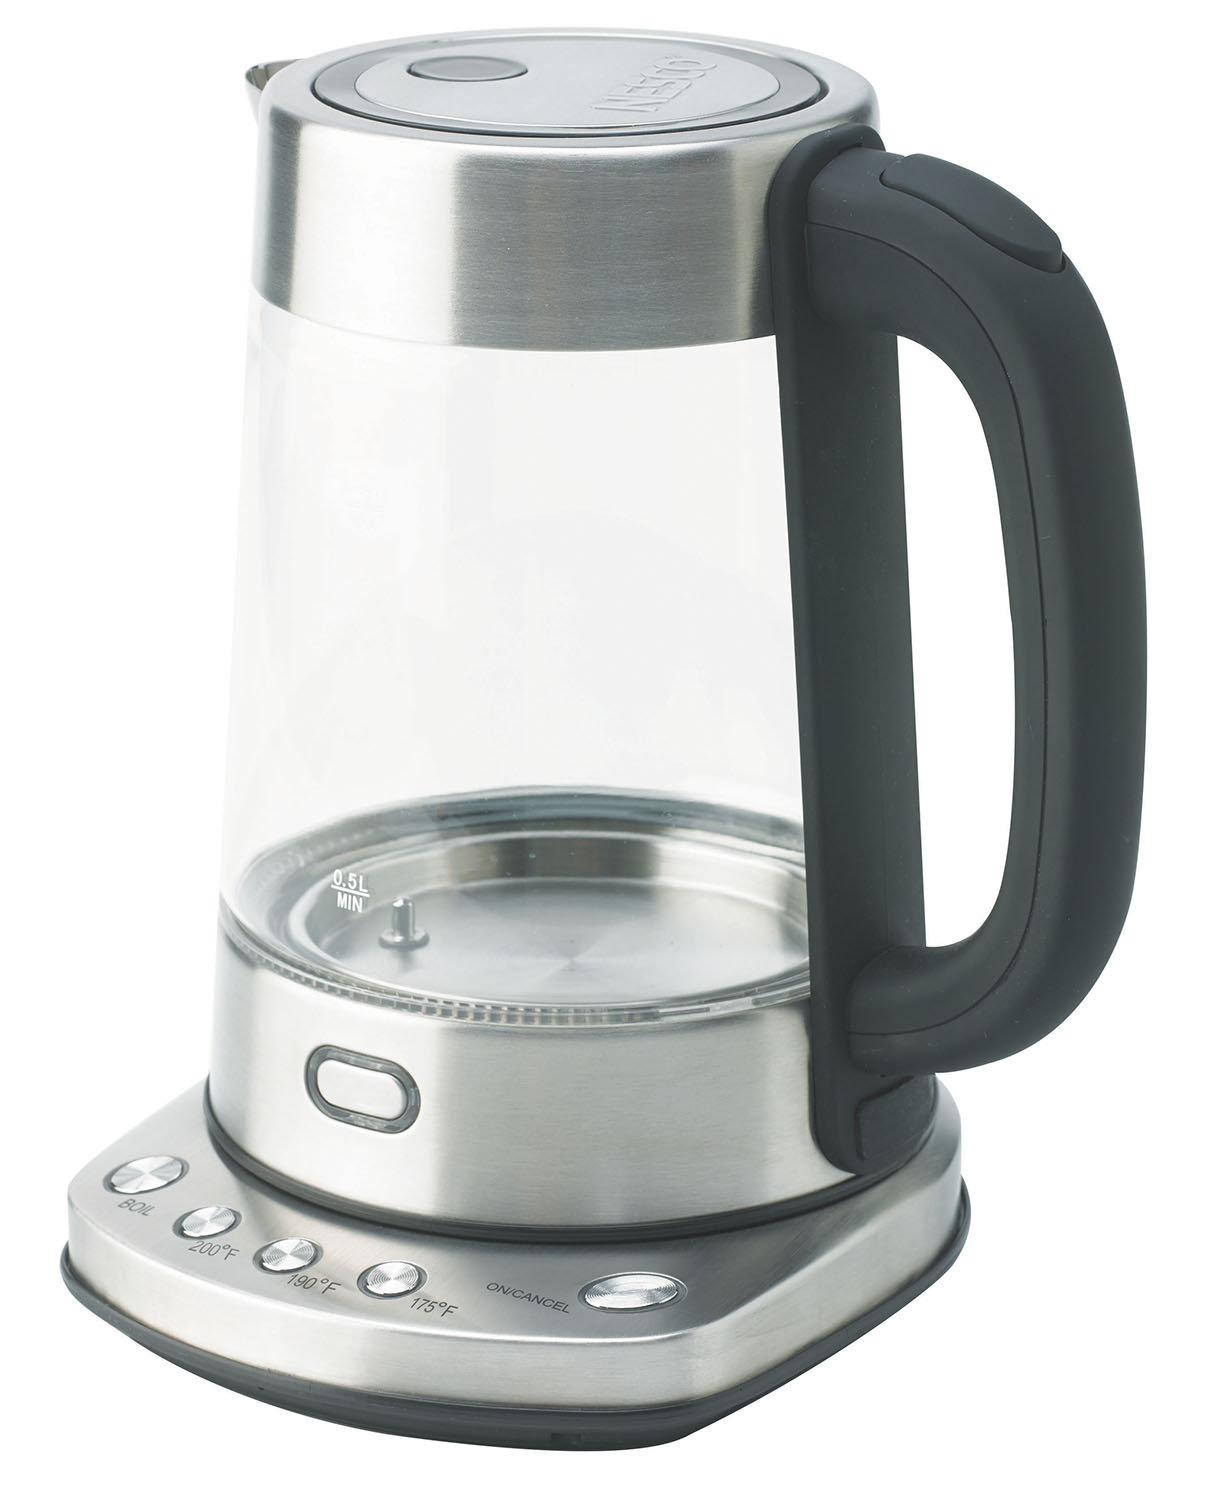 https://assets.wfcdn.com/im/00831013/compr-r85/2455/245575946/nesco-18-qt-digital-glass-water-kettle.jpg